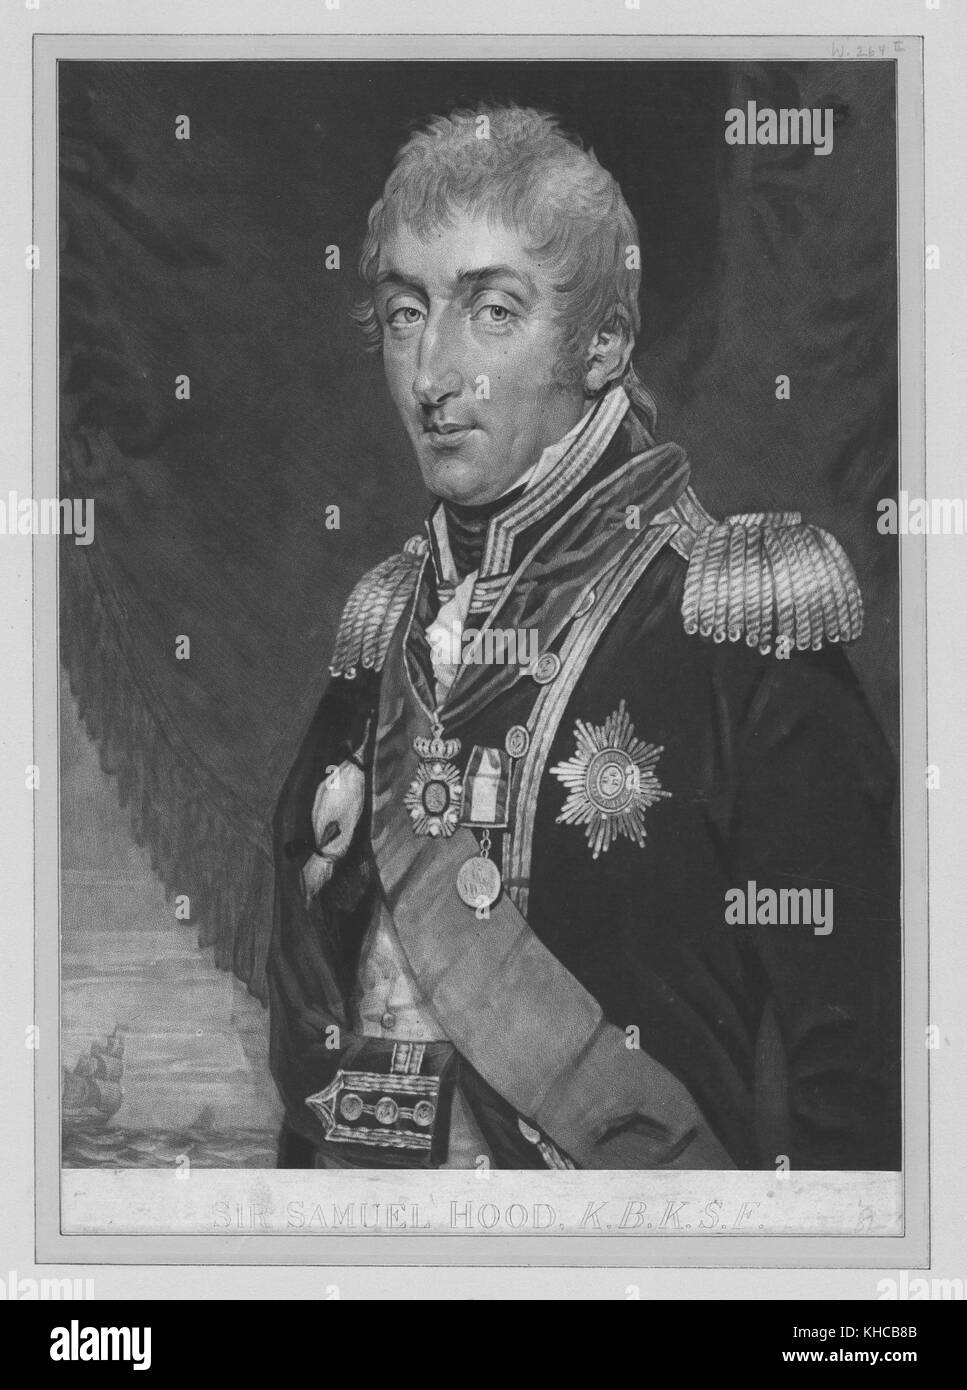 Brustbild von Sir Samuel hood, in Uniform, das Tragen von Medaillen, besonders für seinen Service im amerikanischen Unabhängigkeitskrieg und die französische revolutionäre Kriege, 1850 bekannt. Von der New York Public Library. Stockfoto